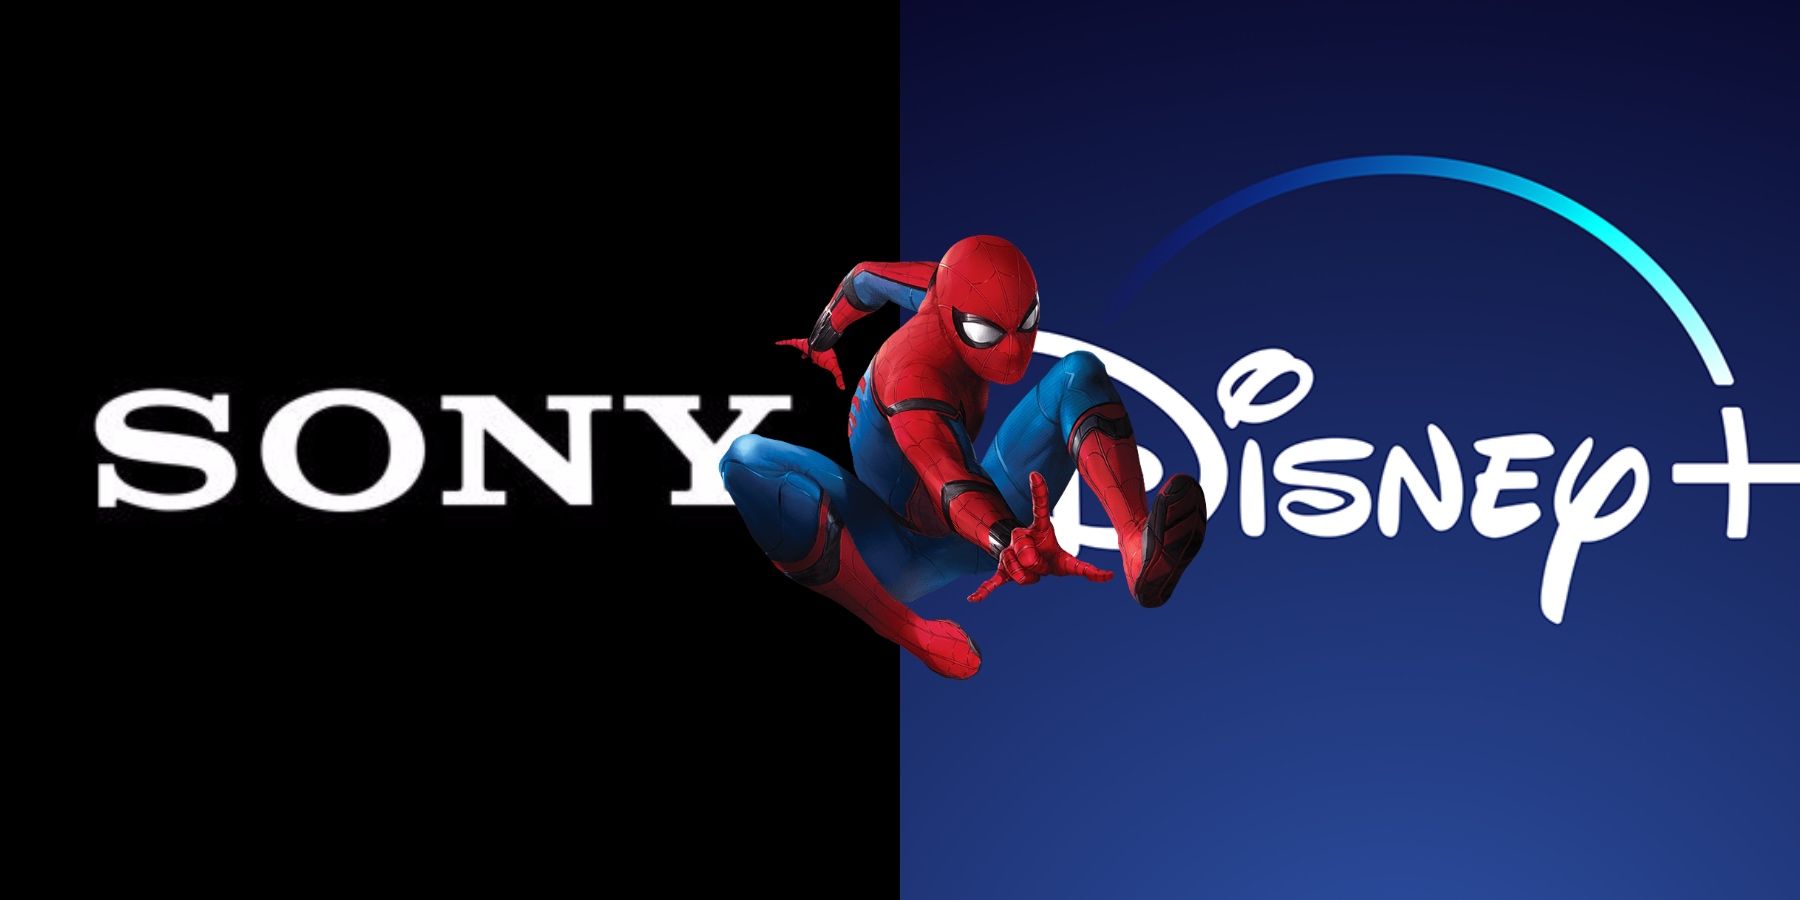 Spider-Man Avi Arad Sony Marvel Studios